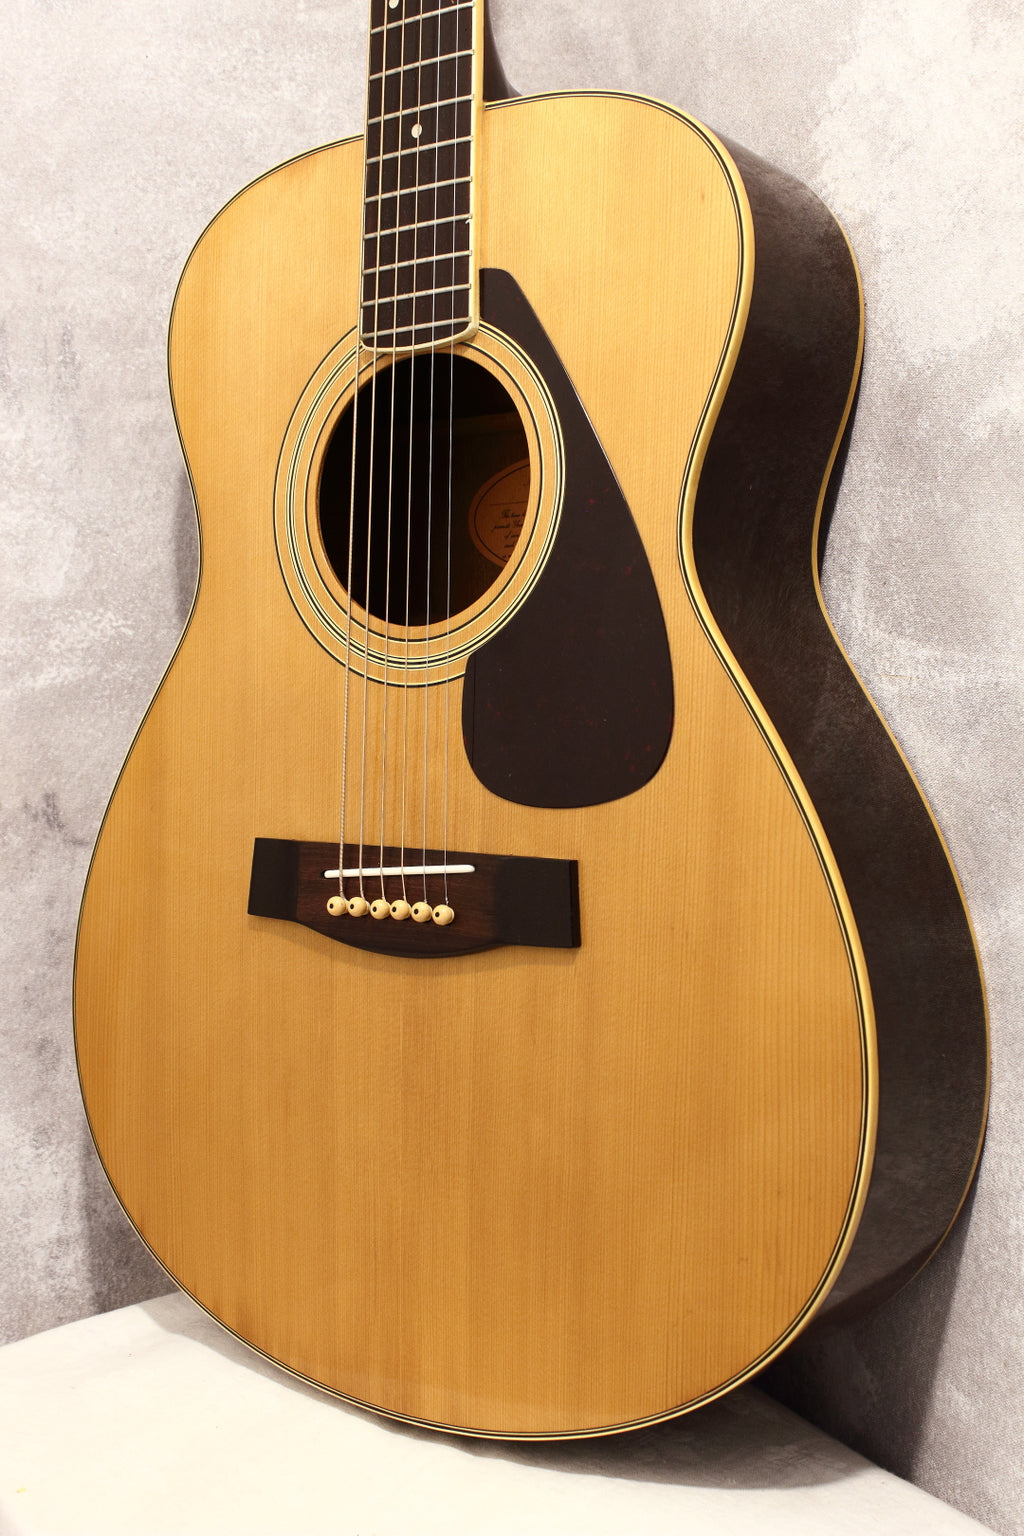 YAMAHA アコースティックギター FG-202 70年代 オレンジラベル ソフト 